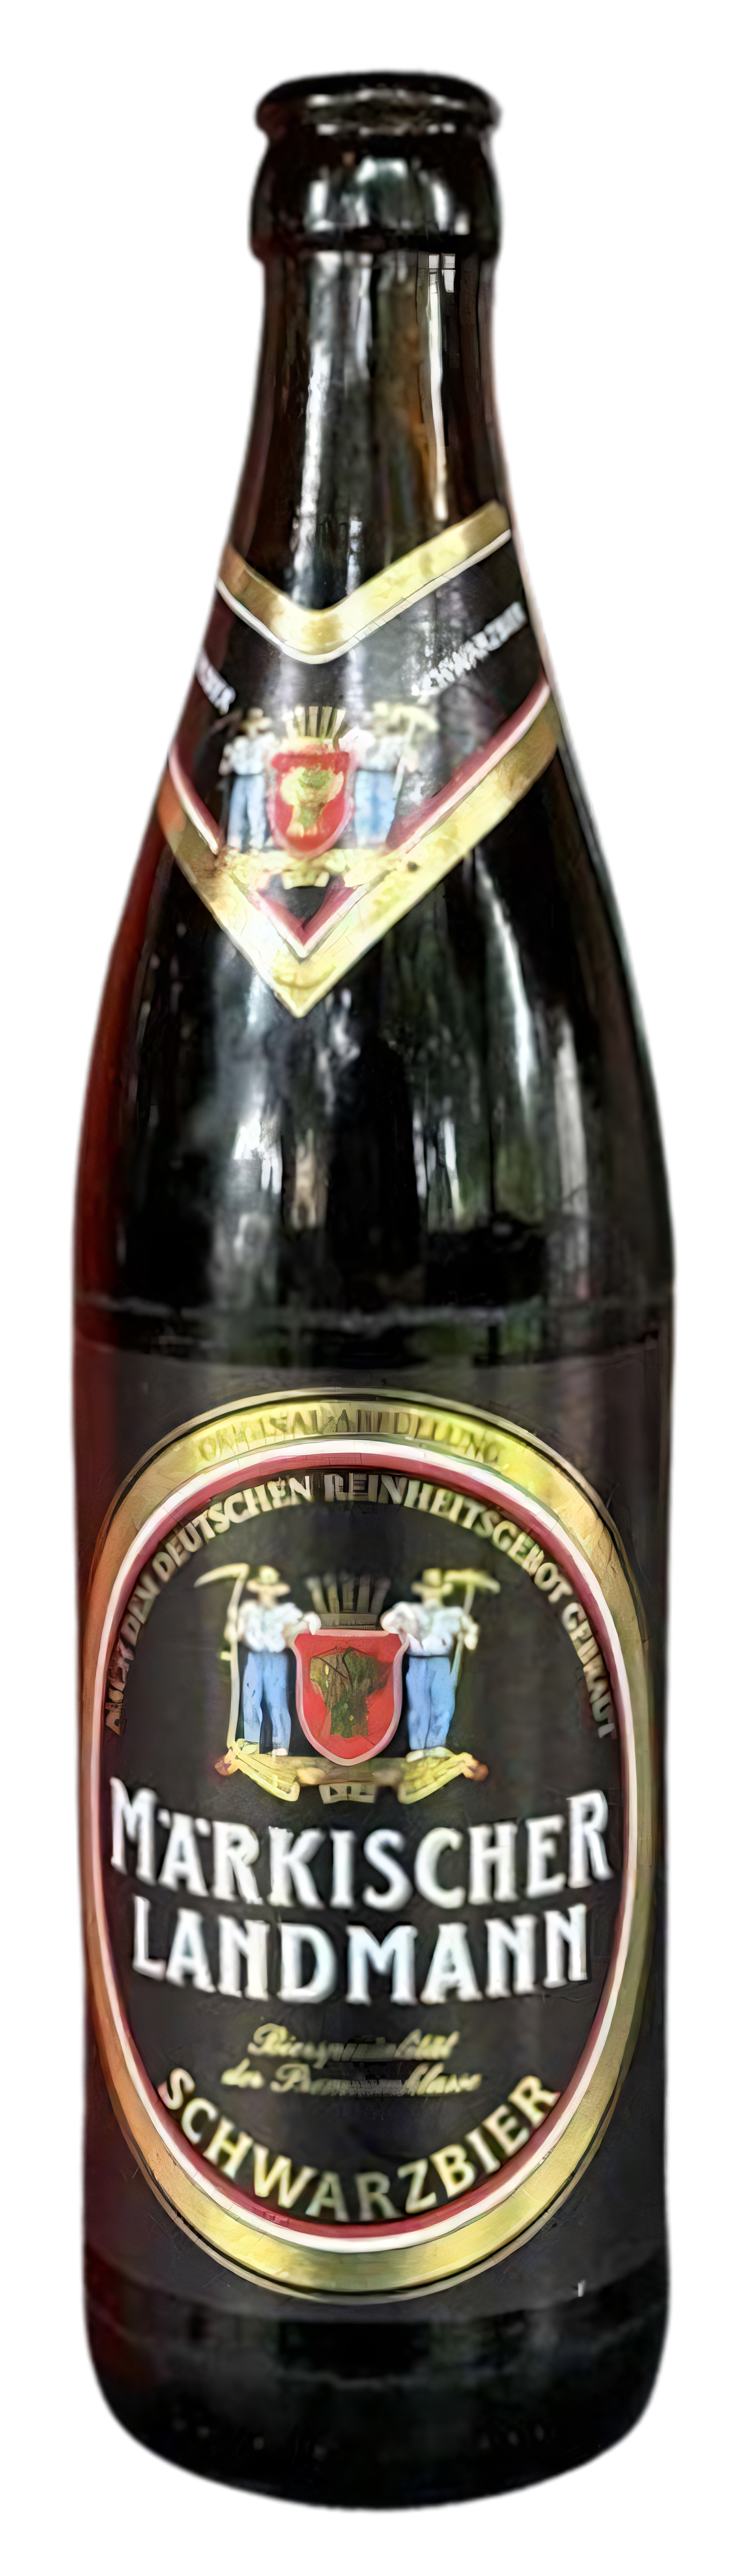 Produktbild von Berliner Kindl-Schultheiss-Brauerei - Märkischer Landmann Schwarzbier